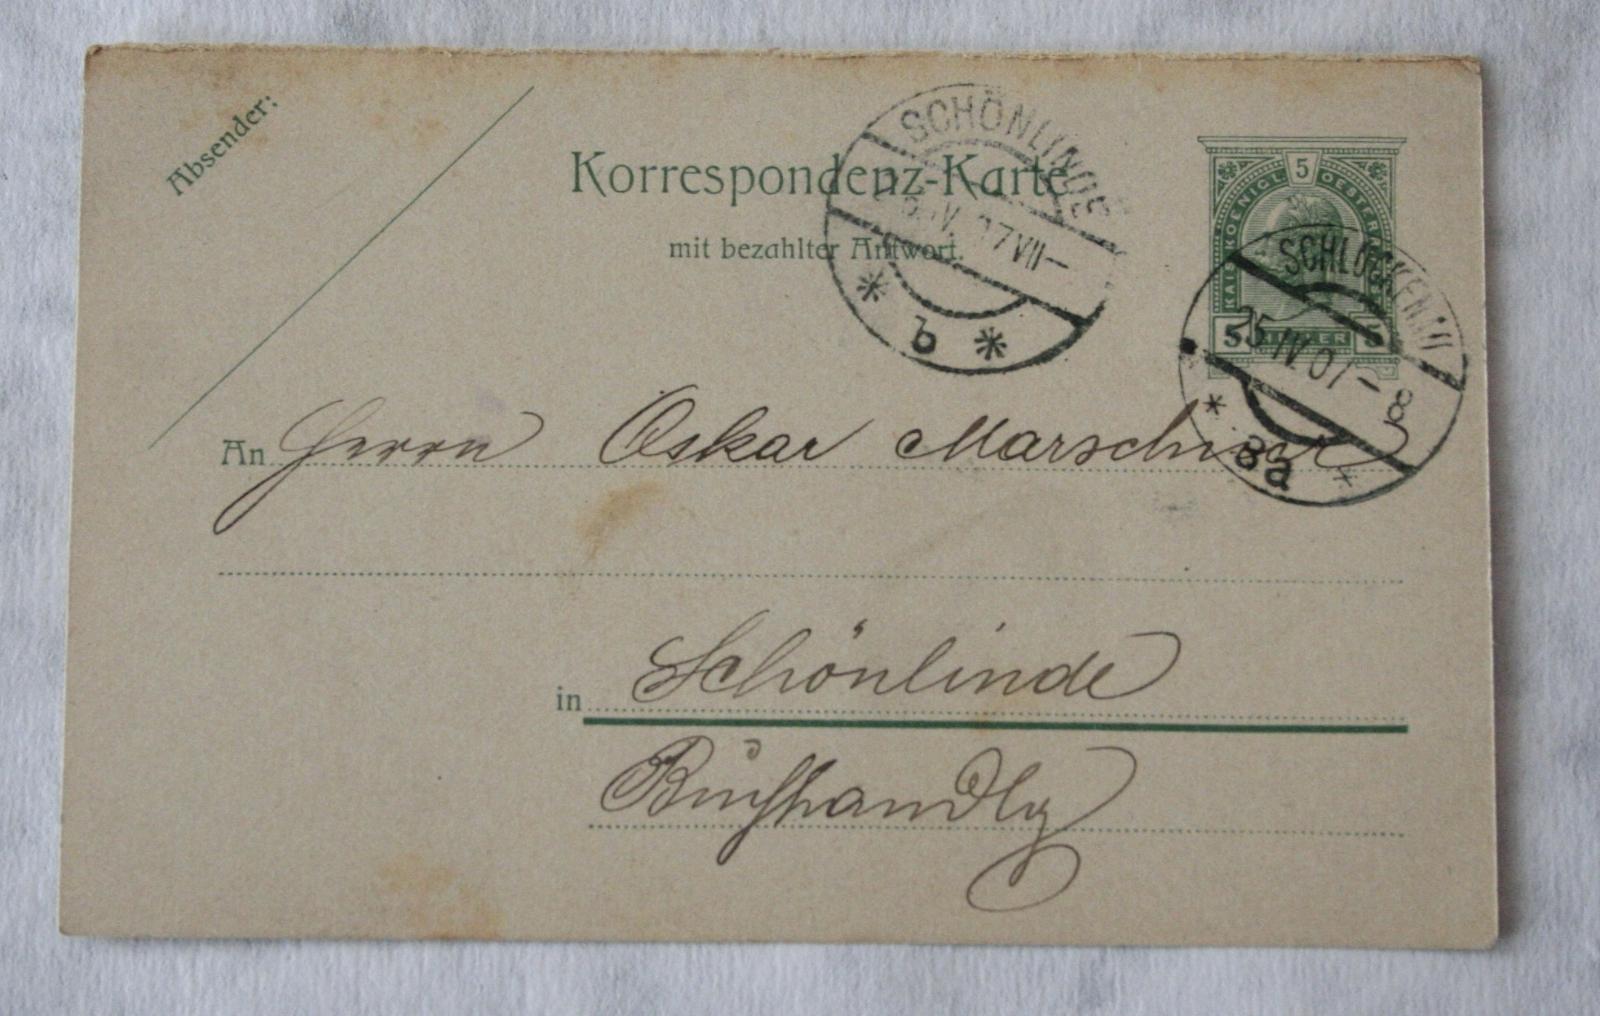 Korešpondenčný lístok RU, 1907 - Pohľadnice miestopis